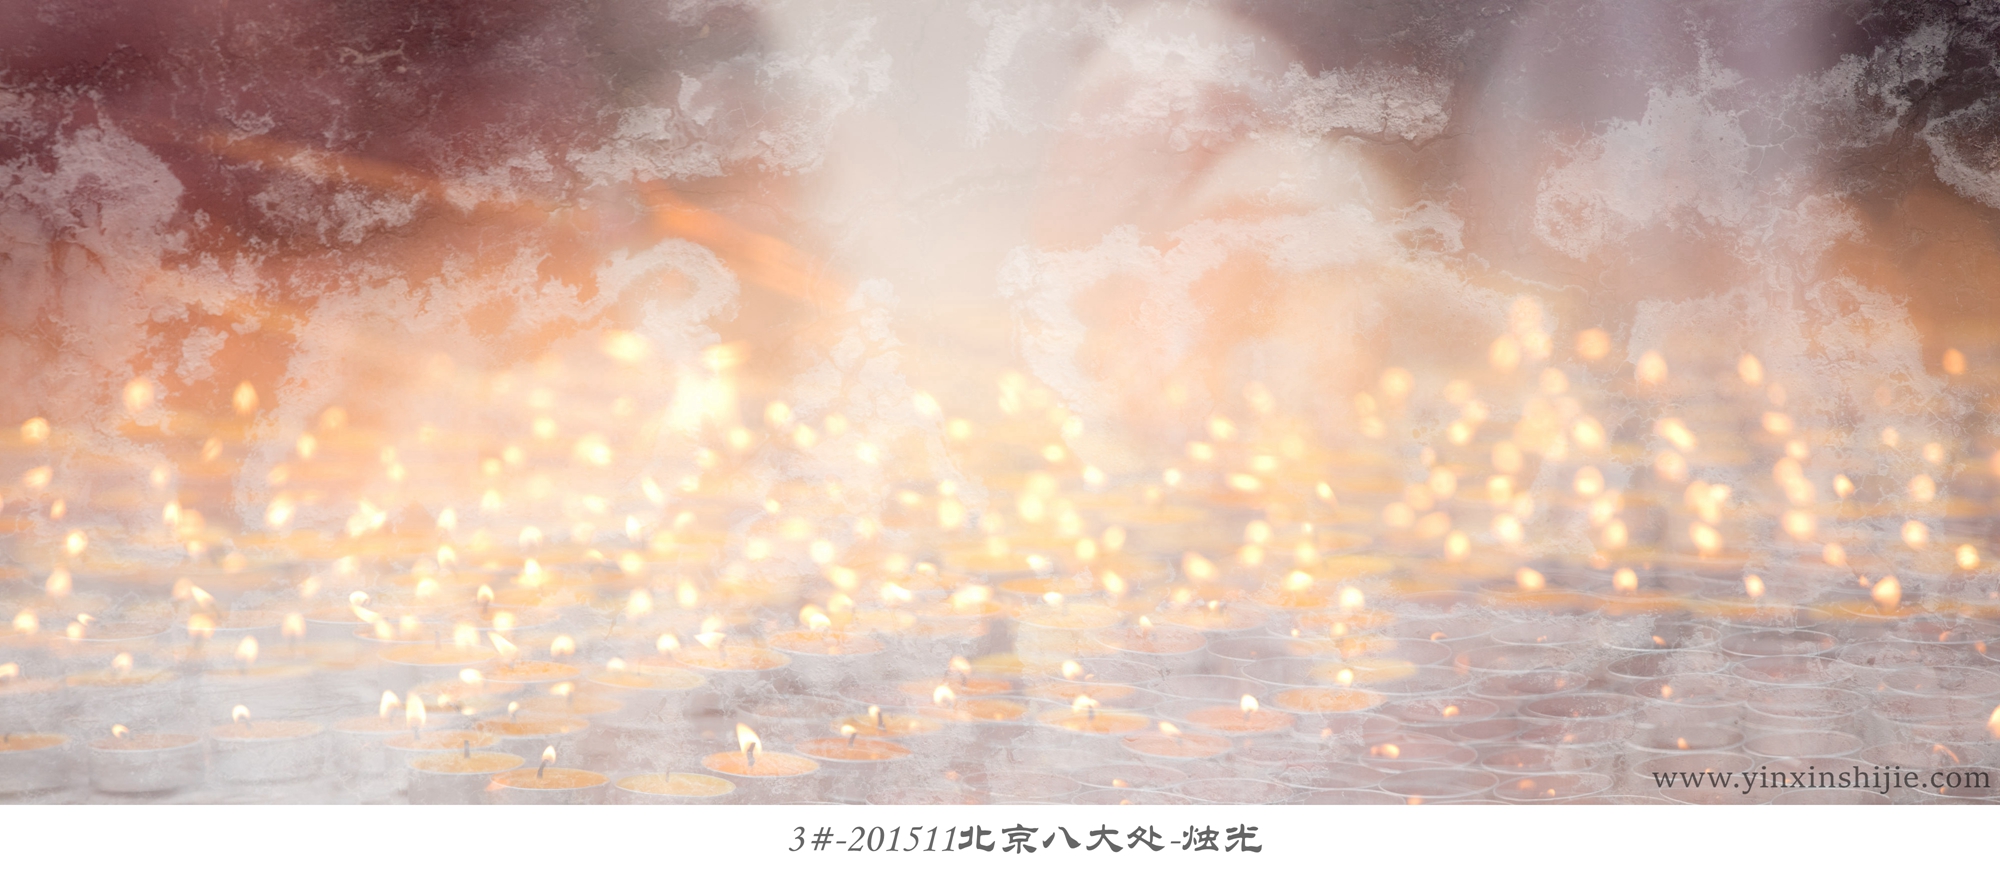 3#-201511北京八大处-烛光